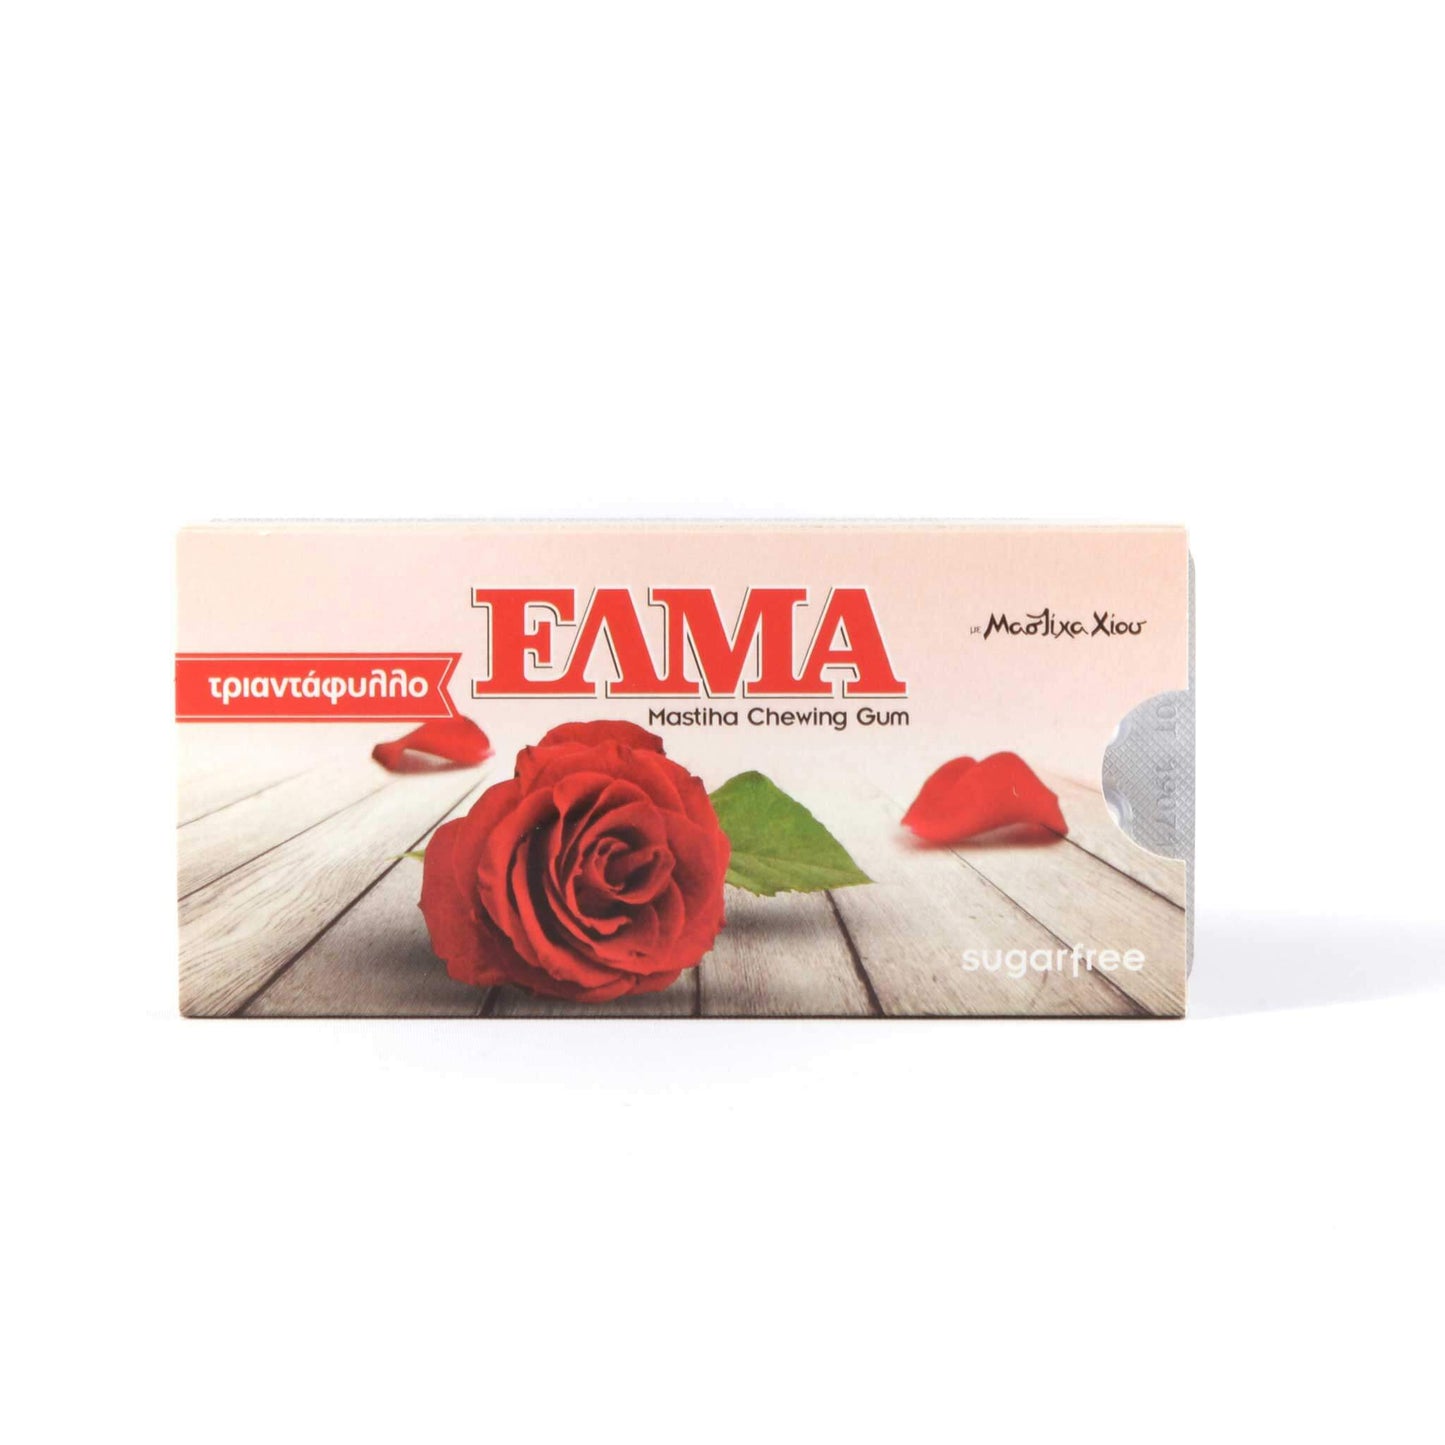 ELMA Rose with mastic gum